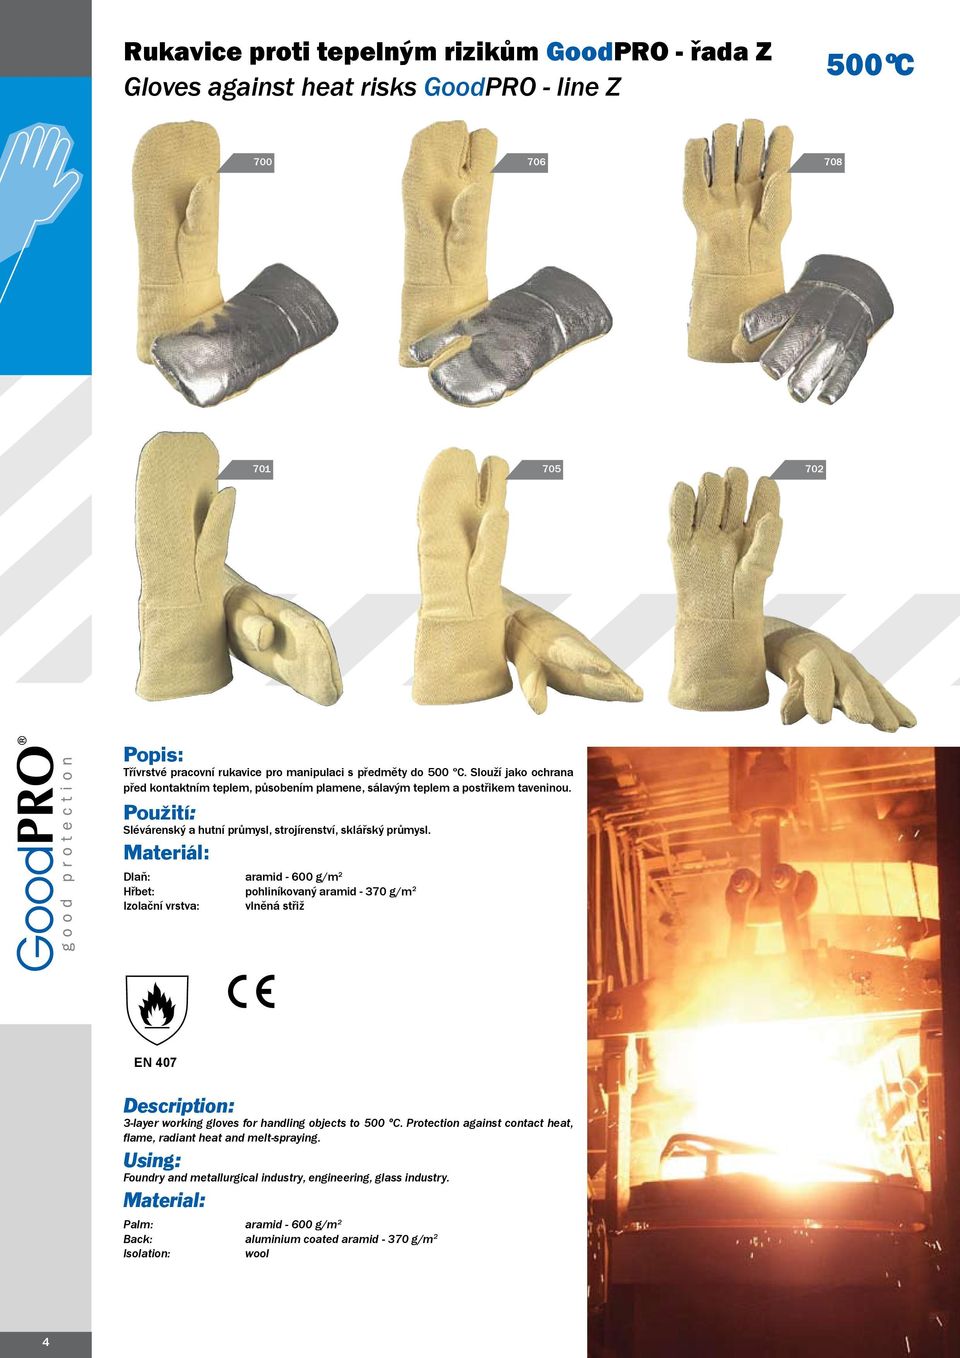 Materiál: Dlaň: Hřbet: Izolační vrstva: aramid - 600 g/m 2 pohliníkovaný aramid - 370 g/m 2 vlněná střiž EN 407 Description: 3-layer working gloves for handling objects to 500 ºC.